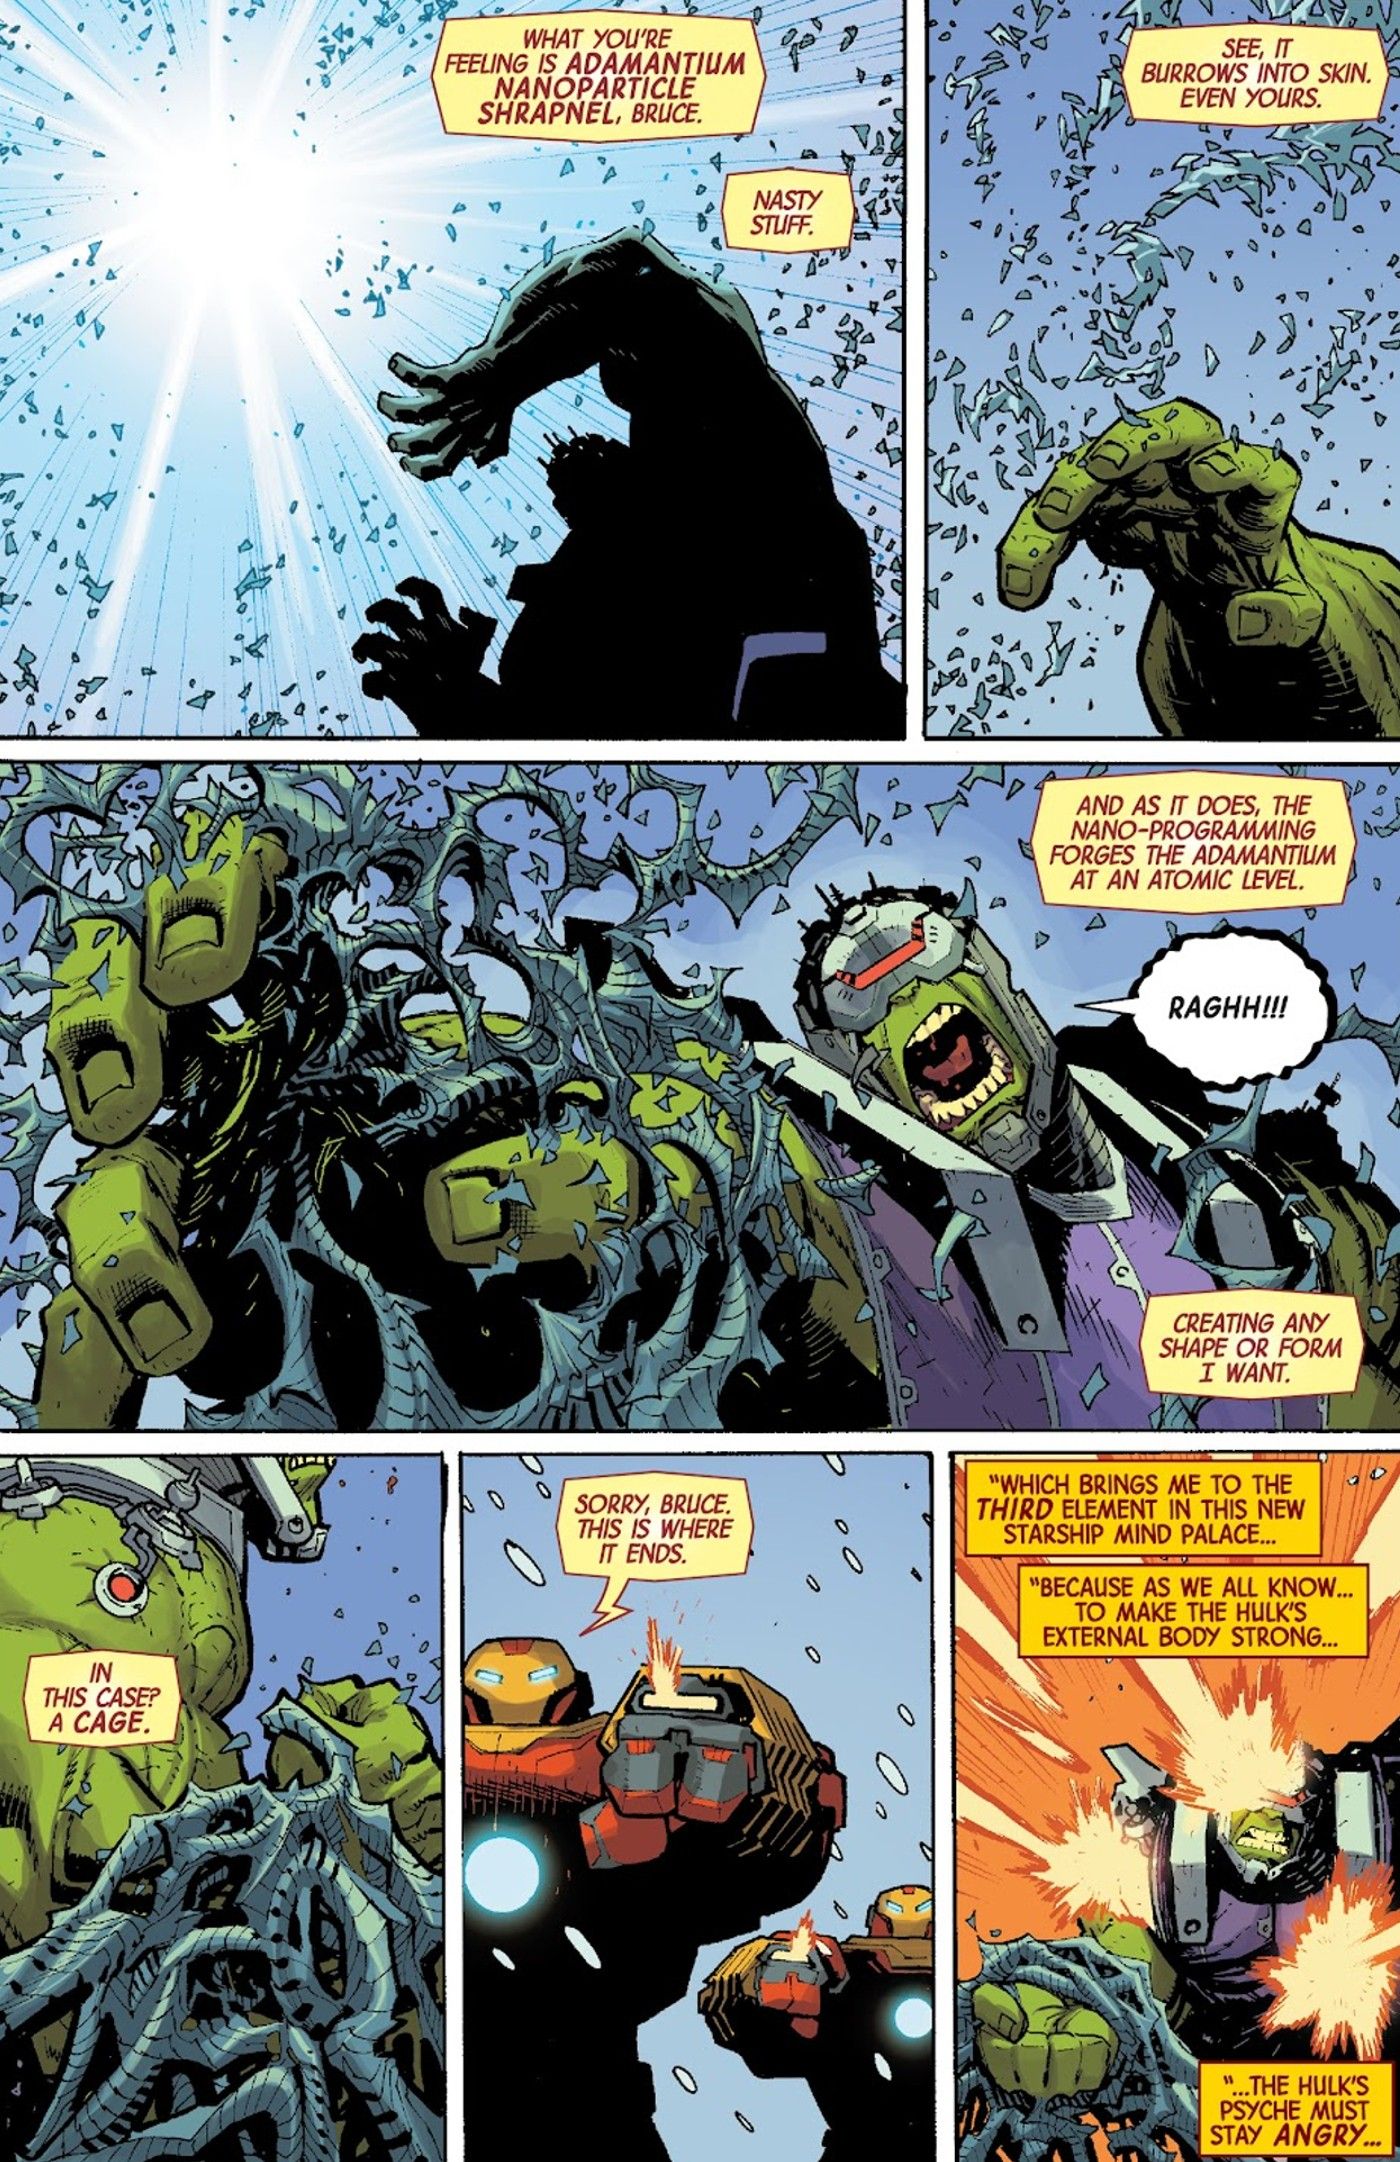 Iron-Man-Hulkbuster-Adamantium-Shrapnel